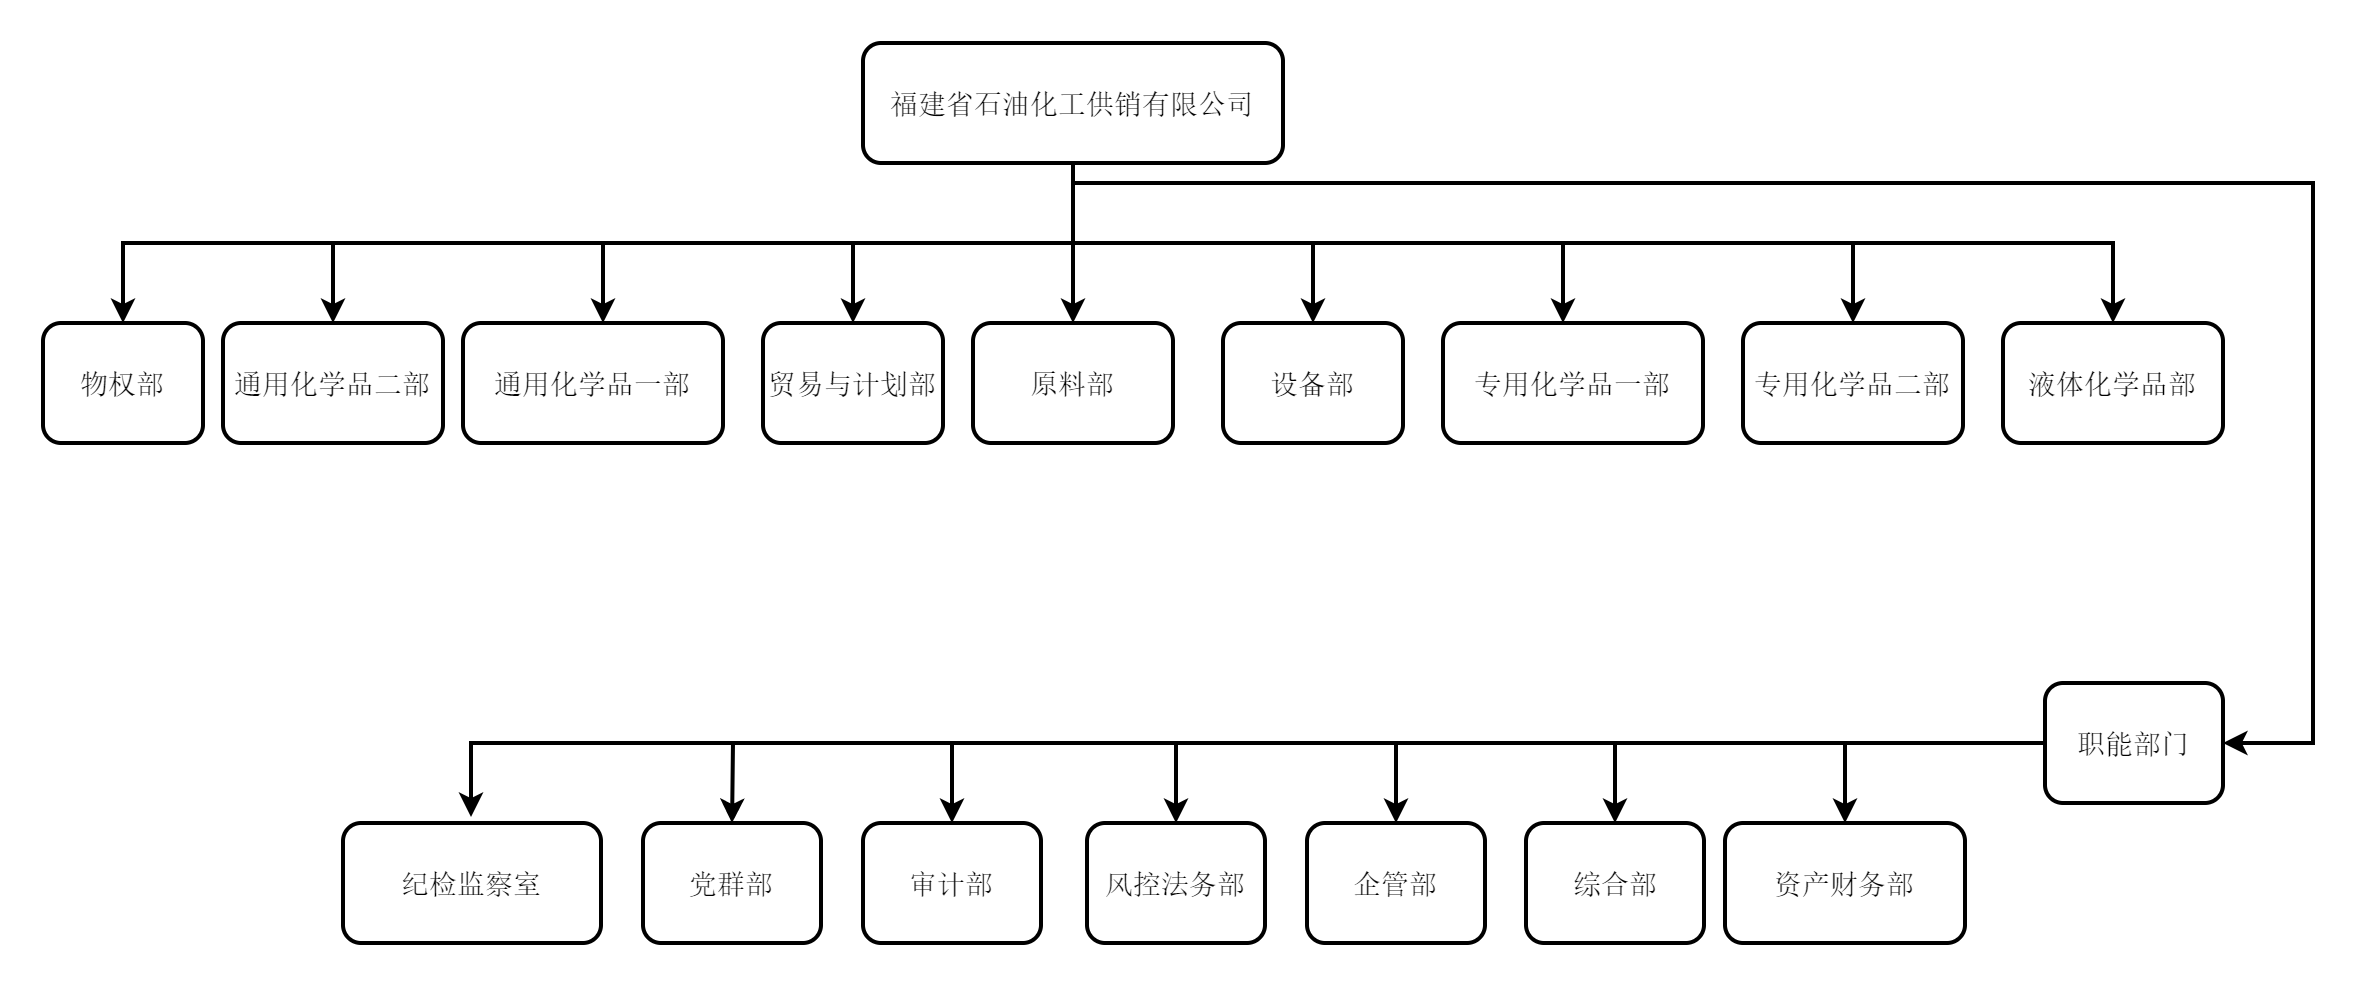 供销公司组织架构图.png